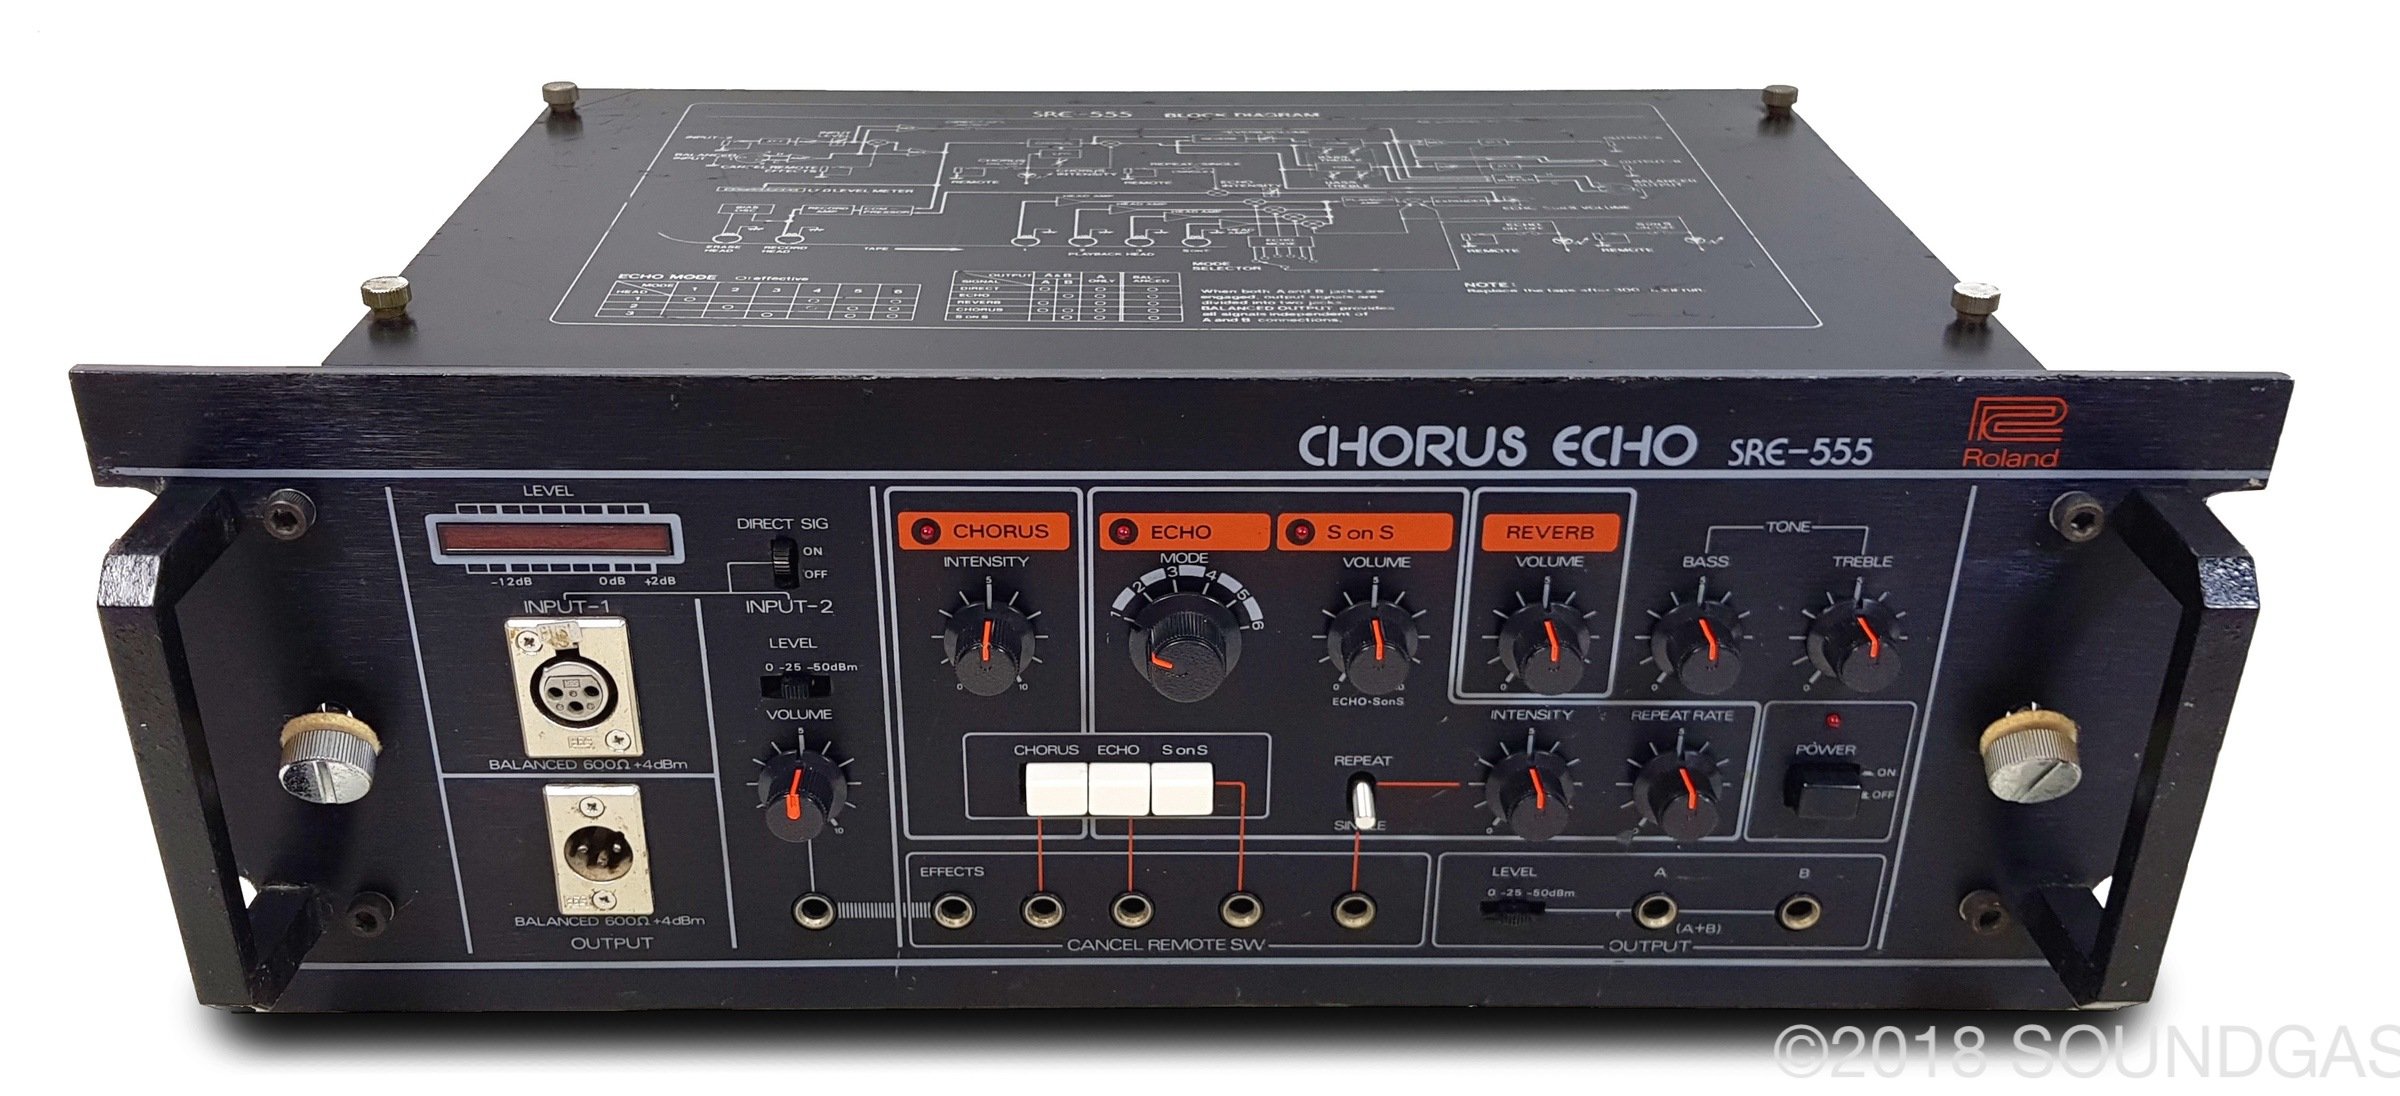 はありませ】 Roland CHORUS ECHO SRE-555 テープエコー おもちゃ・